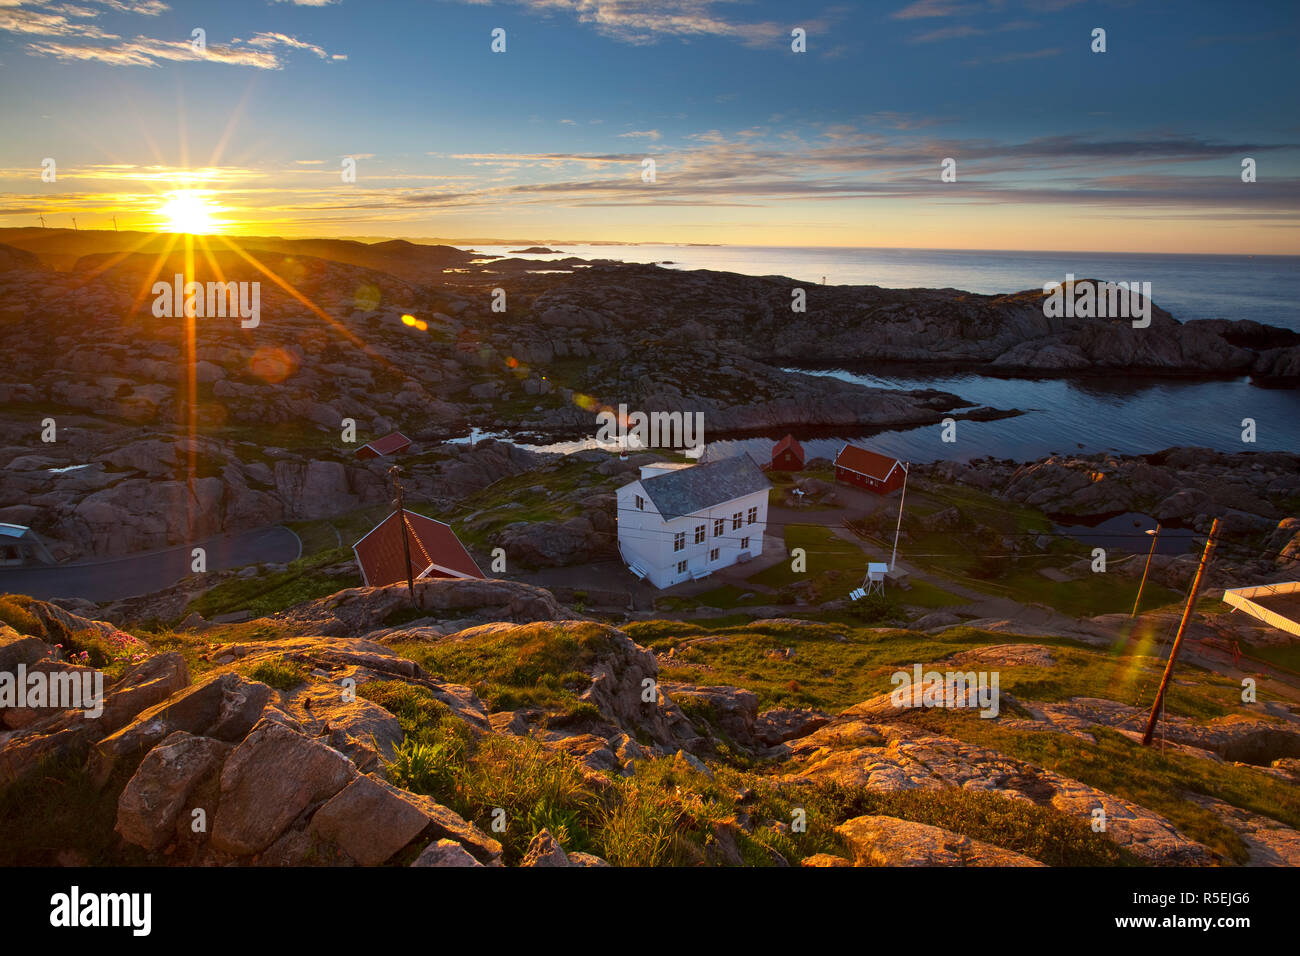 Il paesaggio costiero vister dall' idillica Lindesnes Fyr, faro di Lindesnes, Norvegia Foto Stock